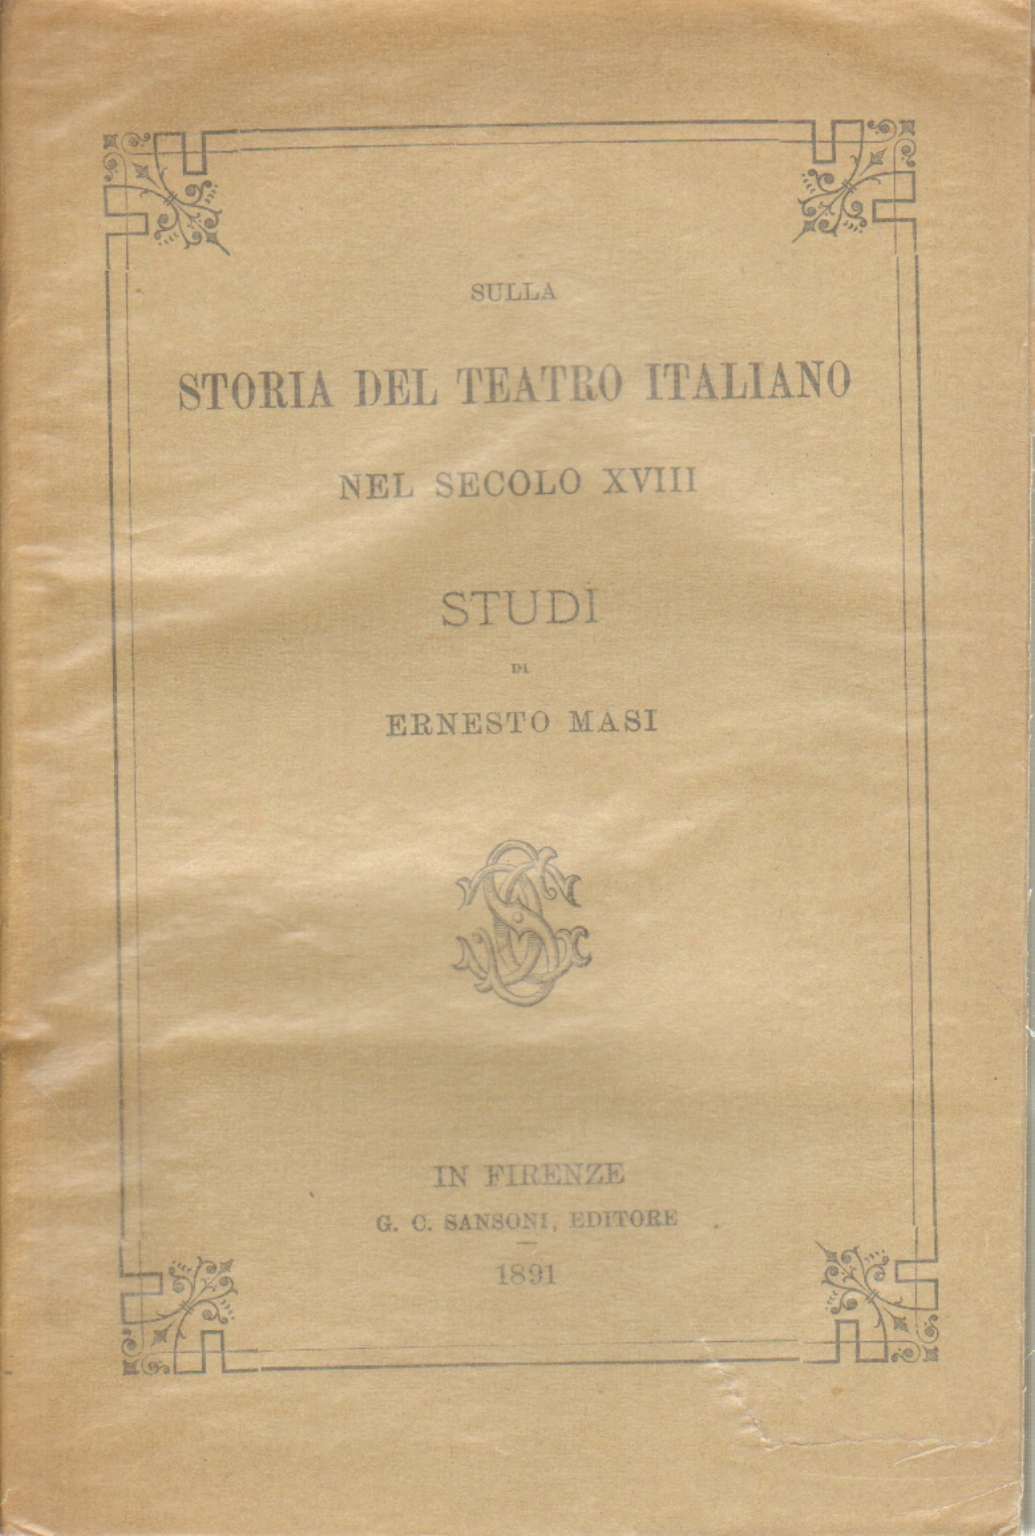 Historia del teatro italiano en el siglo XVIII, Ernesto Masi